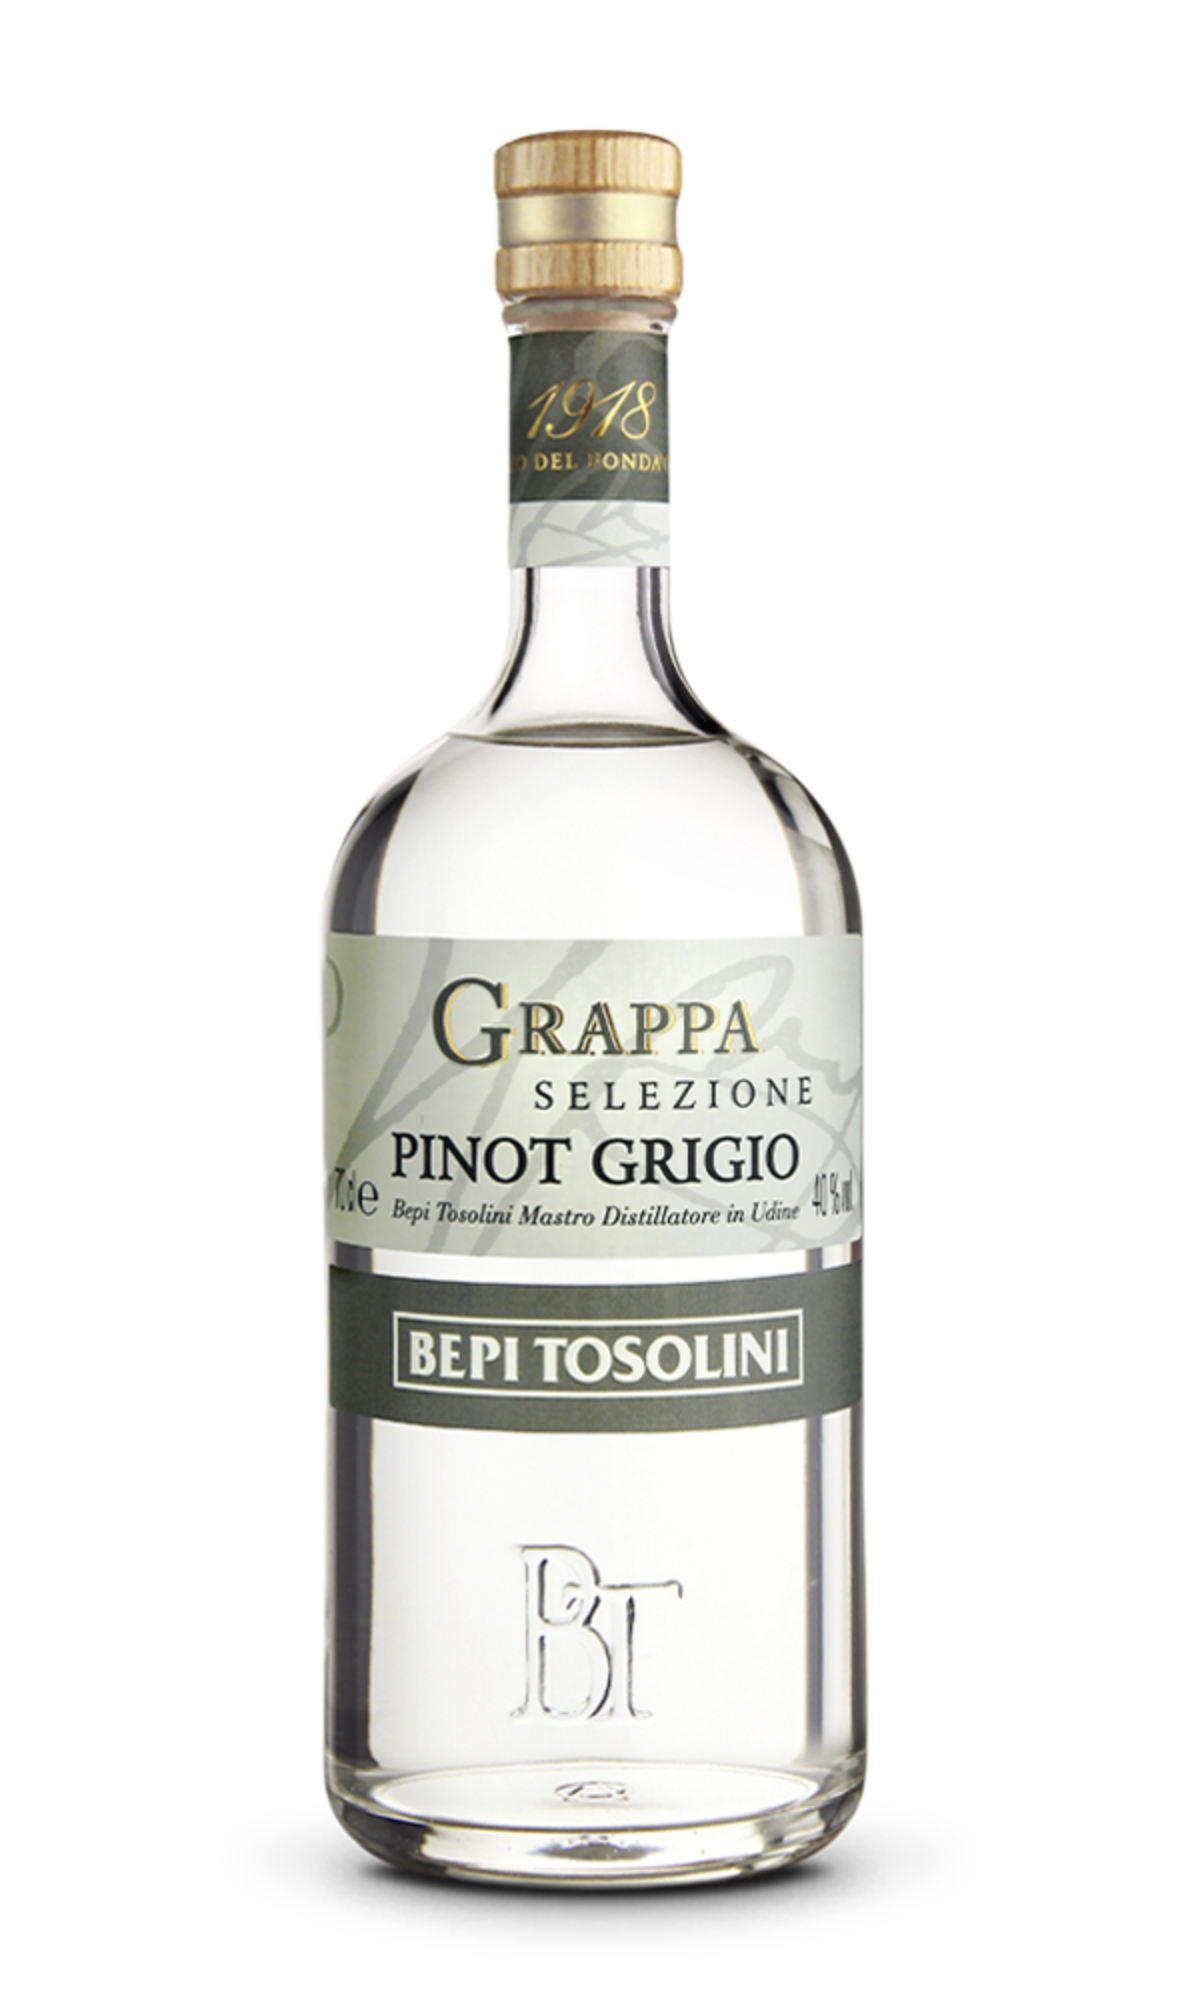 Bepi Grappa - Tosolini Pinot Grigio